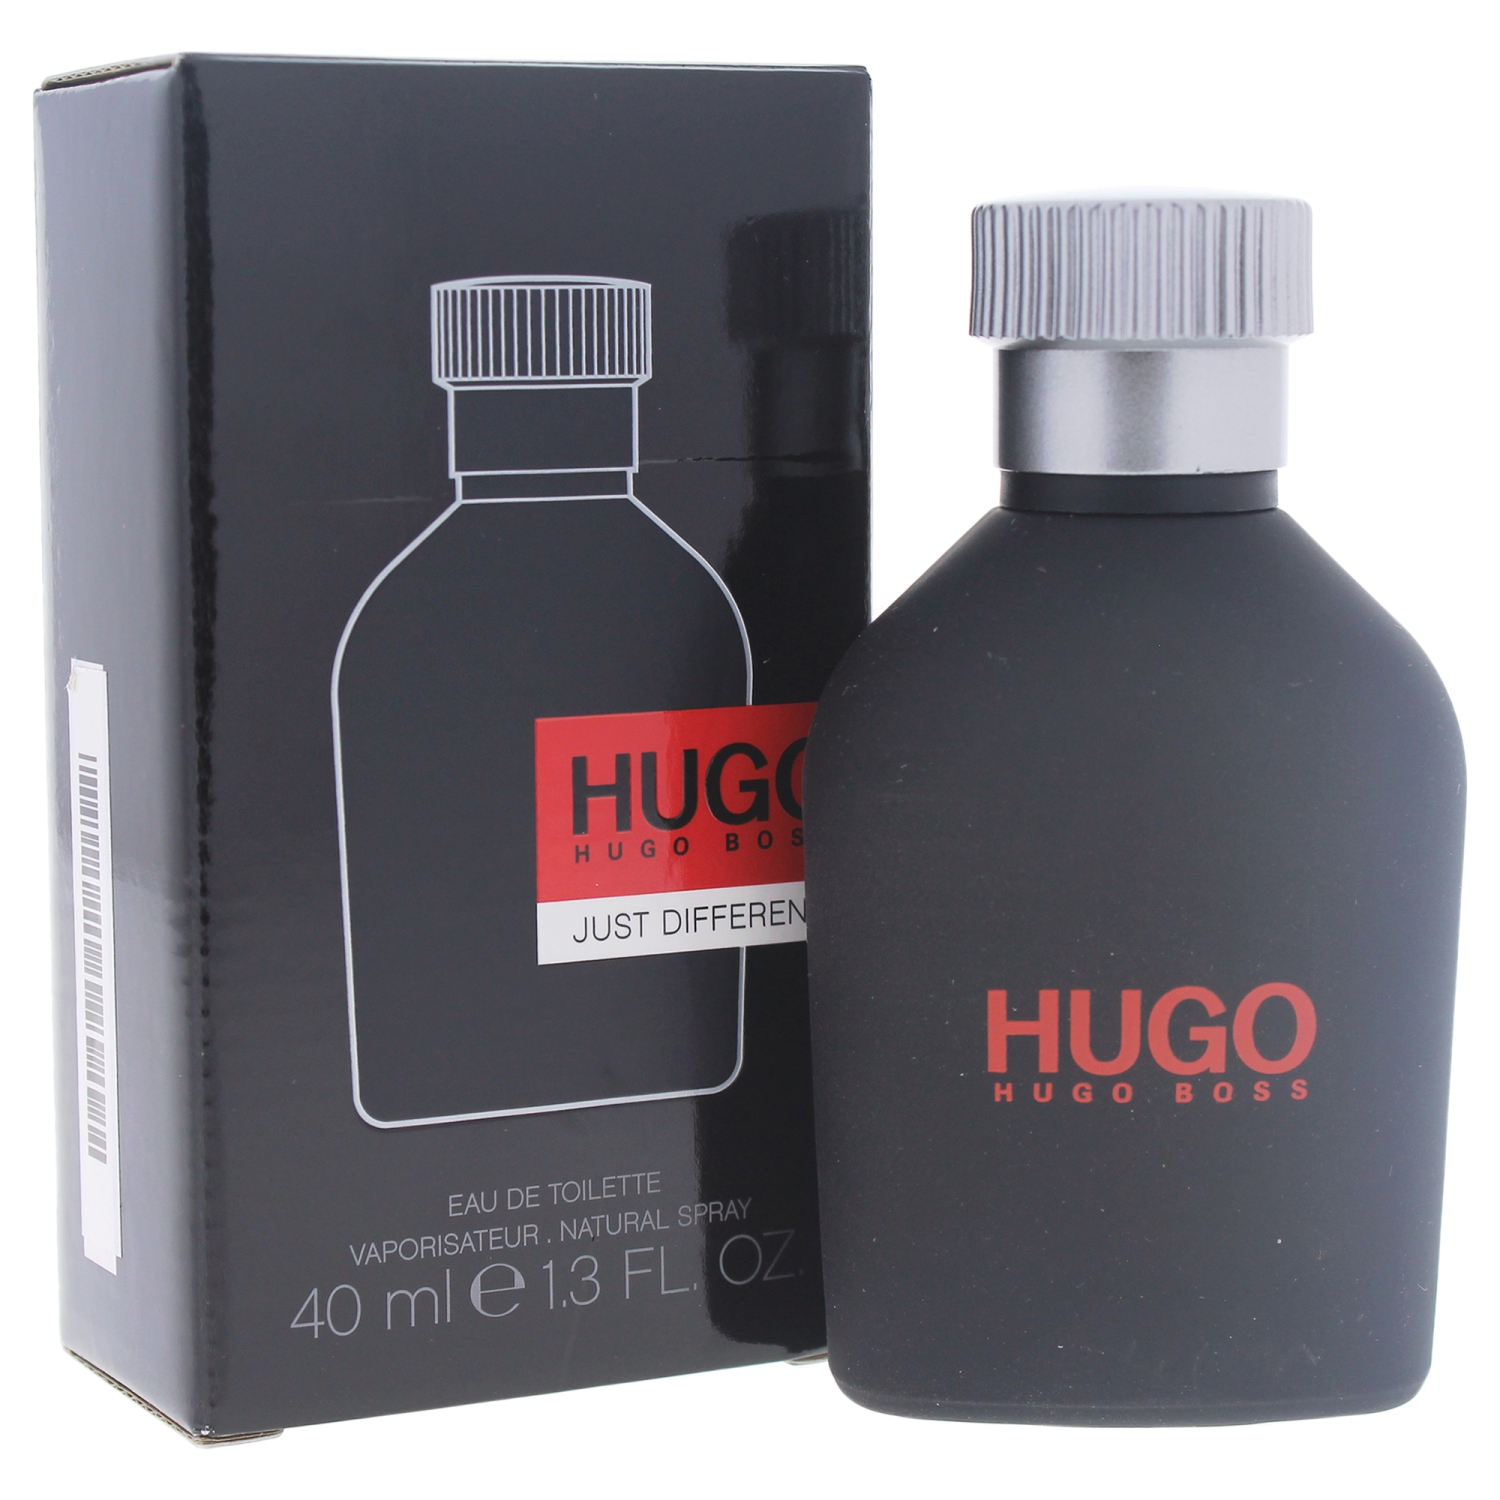 Hugo Just Different by Hugo Boss for Men - 1.3 oz EDT Spray